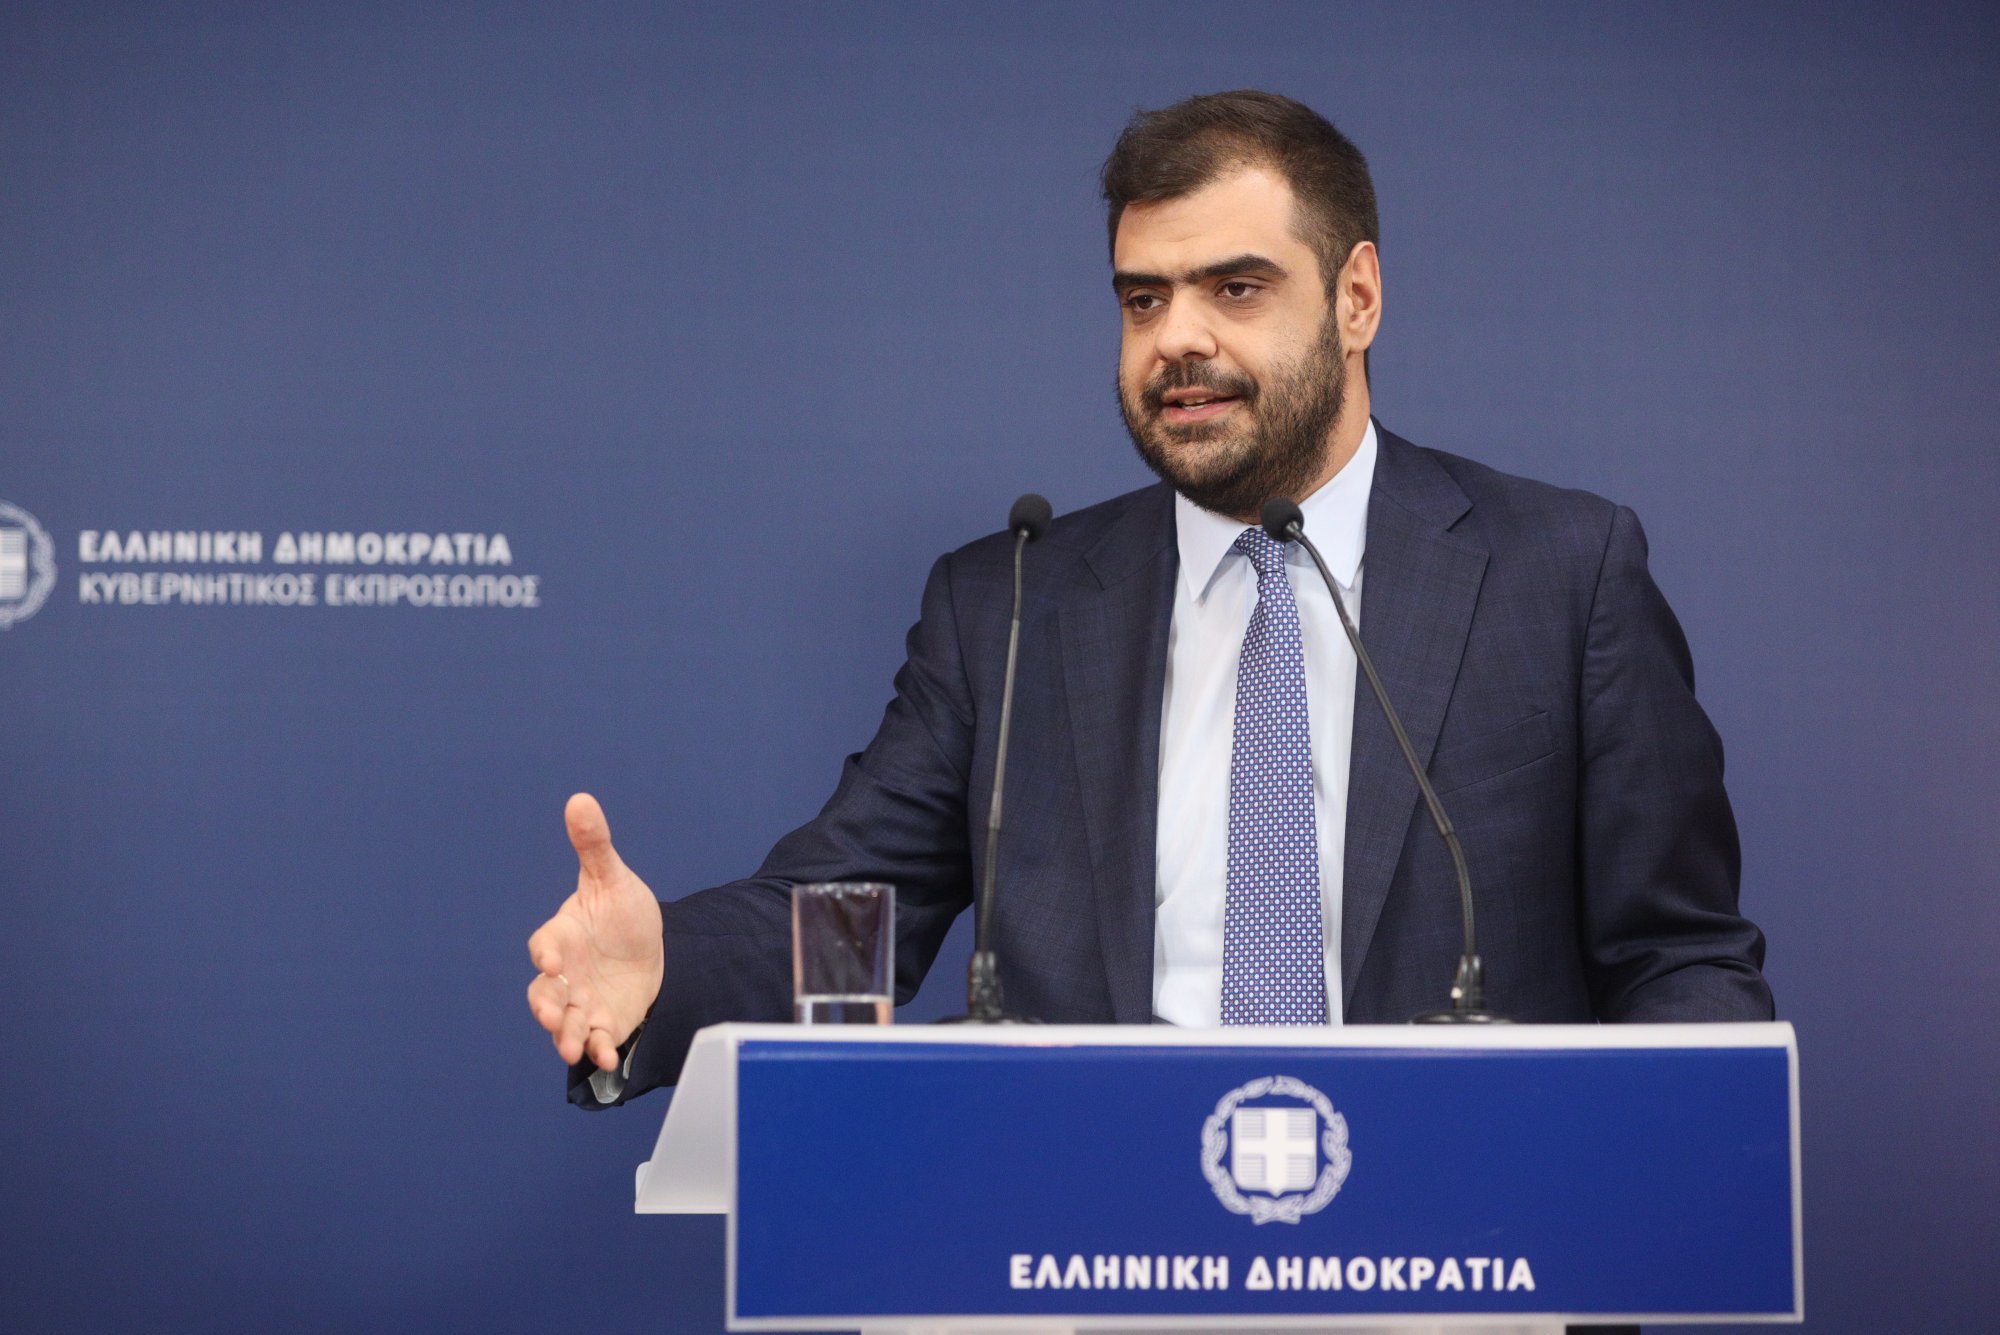 Παύλος Μαρινάκης: Ο πρωθυπουργός επανέλαβε ξεκάθαρα τις εθνικές θέσεις – Δεν αποδεχόμαστε τετελεσμένα